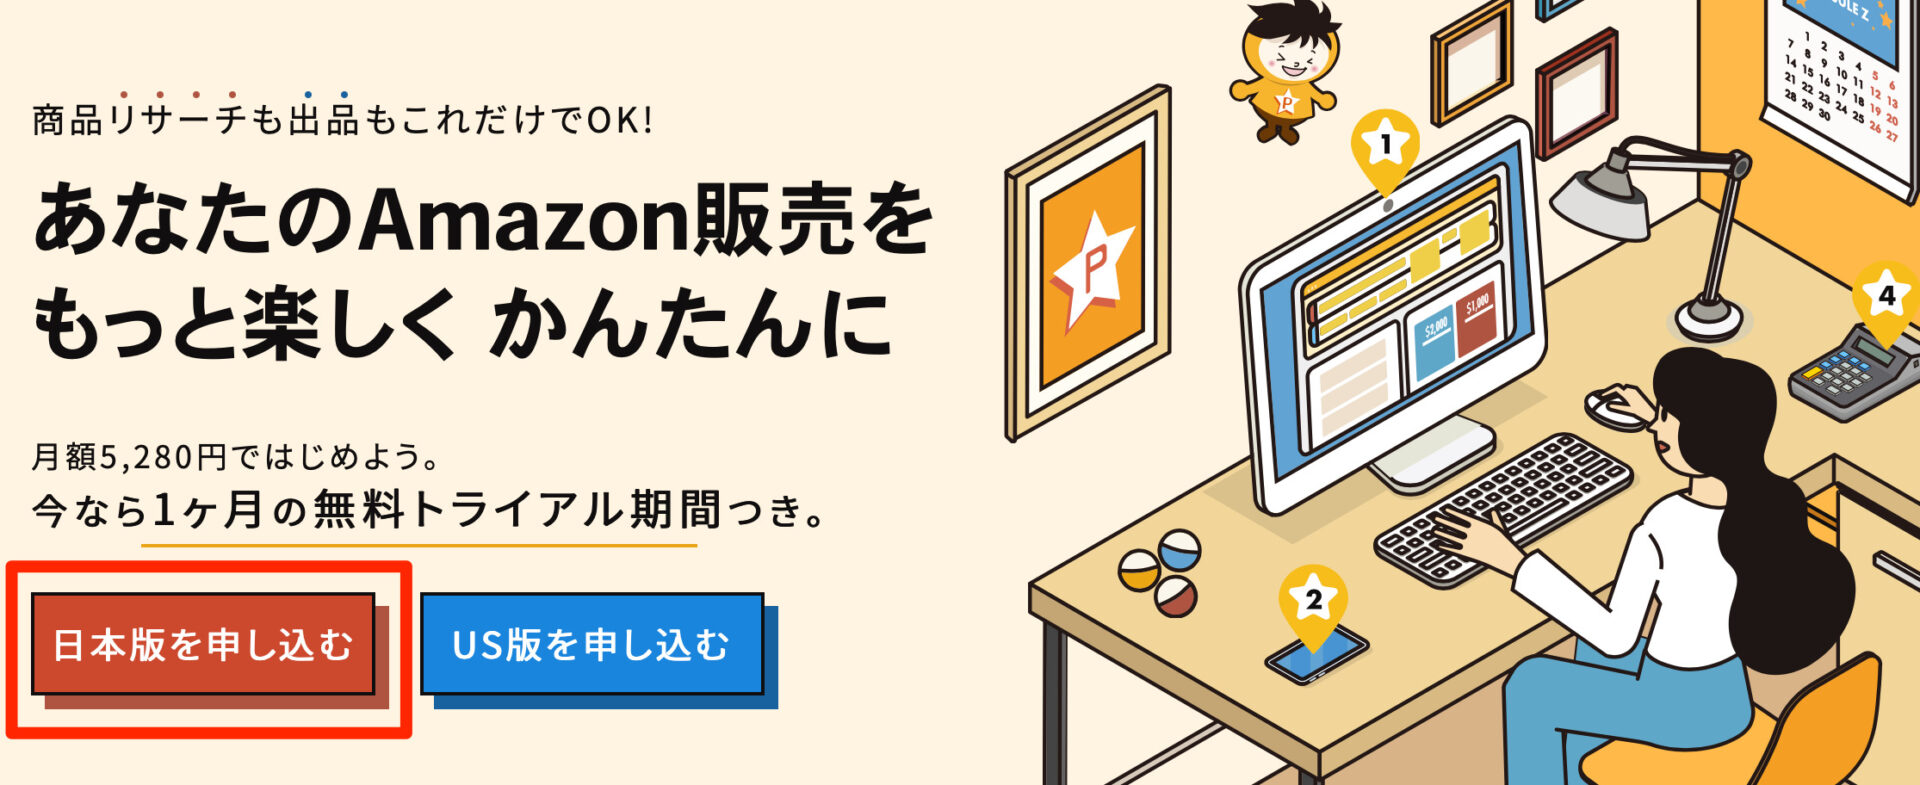 「日本版を申し込む」ボタンを選択する